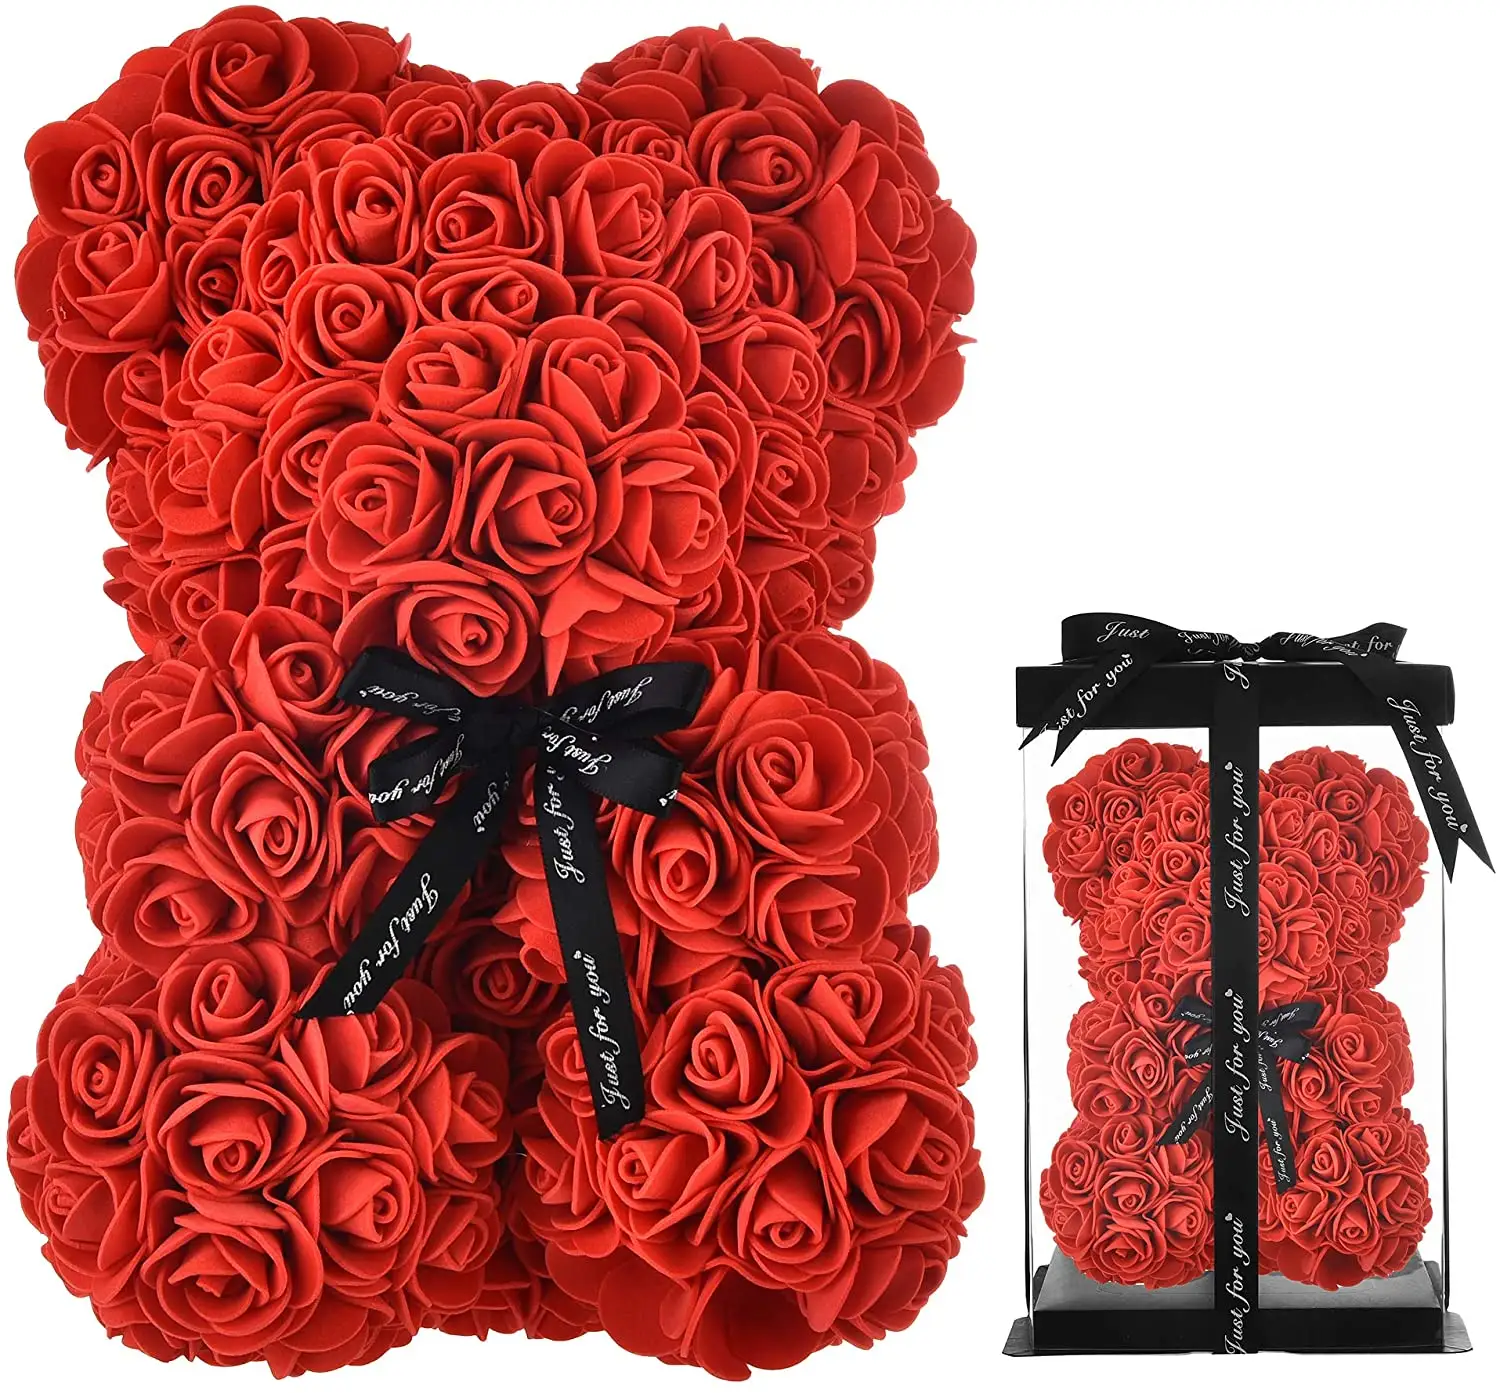 Oso Rosa personalizado con cinta para el día de la madre, oso de peluche de 25cm, regalo de boda y San Valentín, suministros de <span class=keywords><strong>decoración</strong></span>